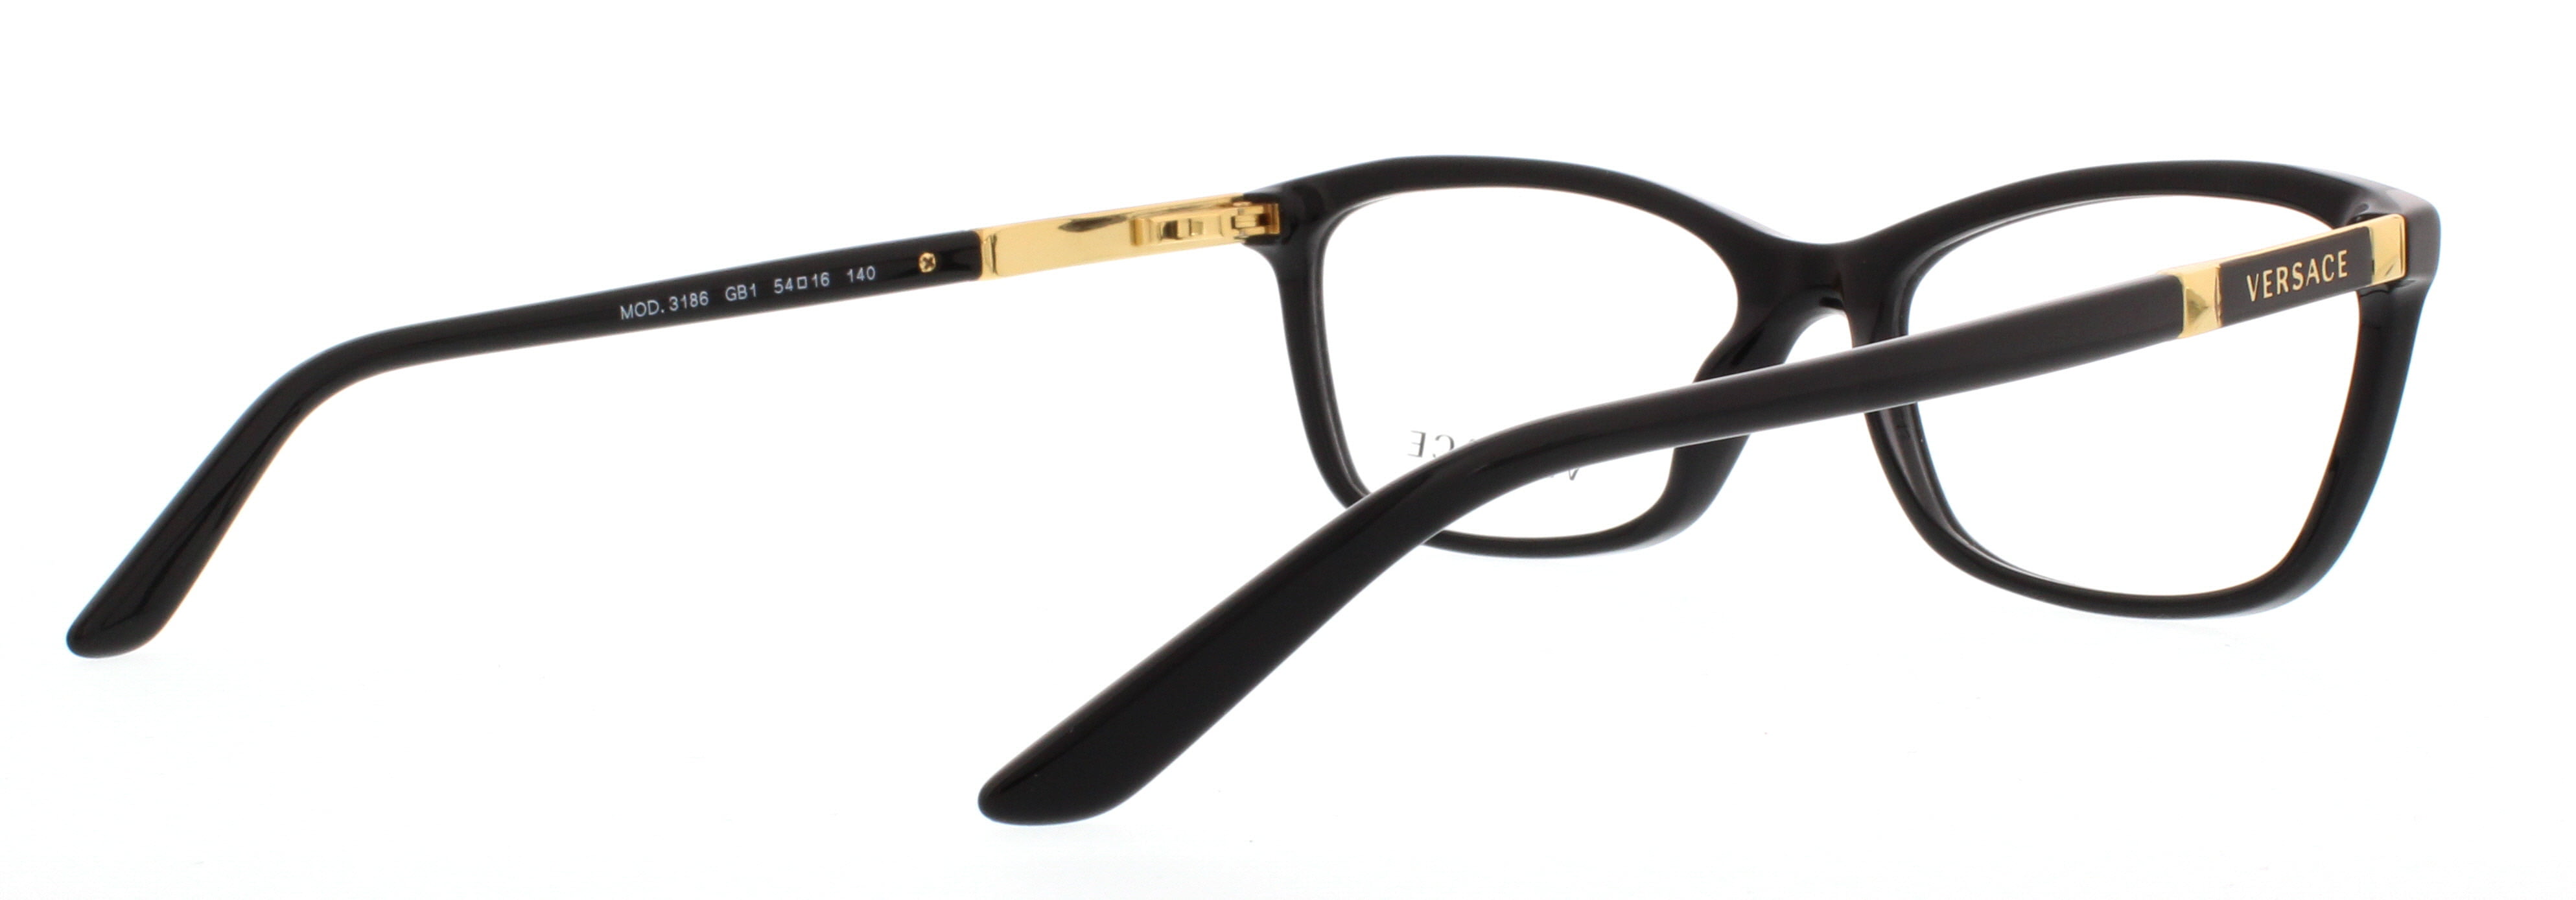 VERSACE Eyeglasses VE 3186 GB1 Black 